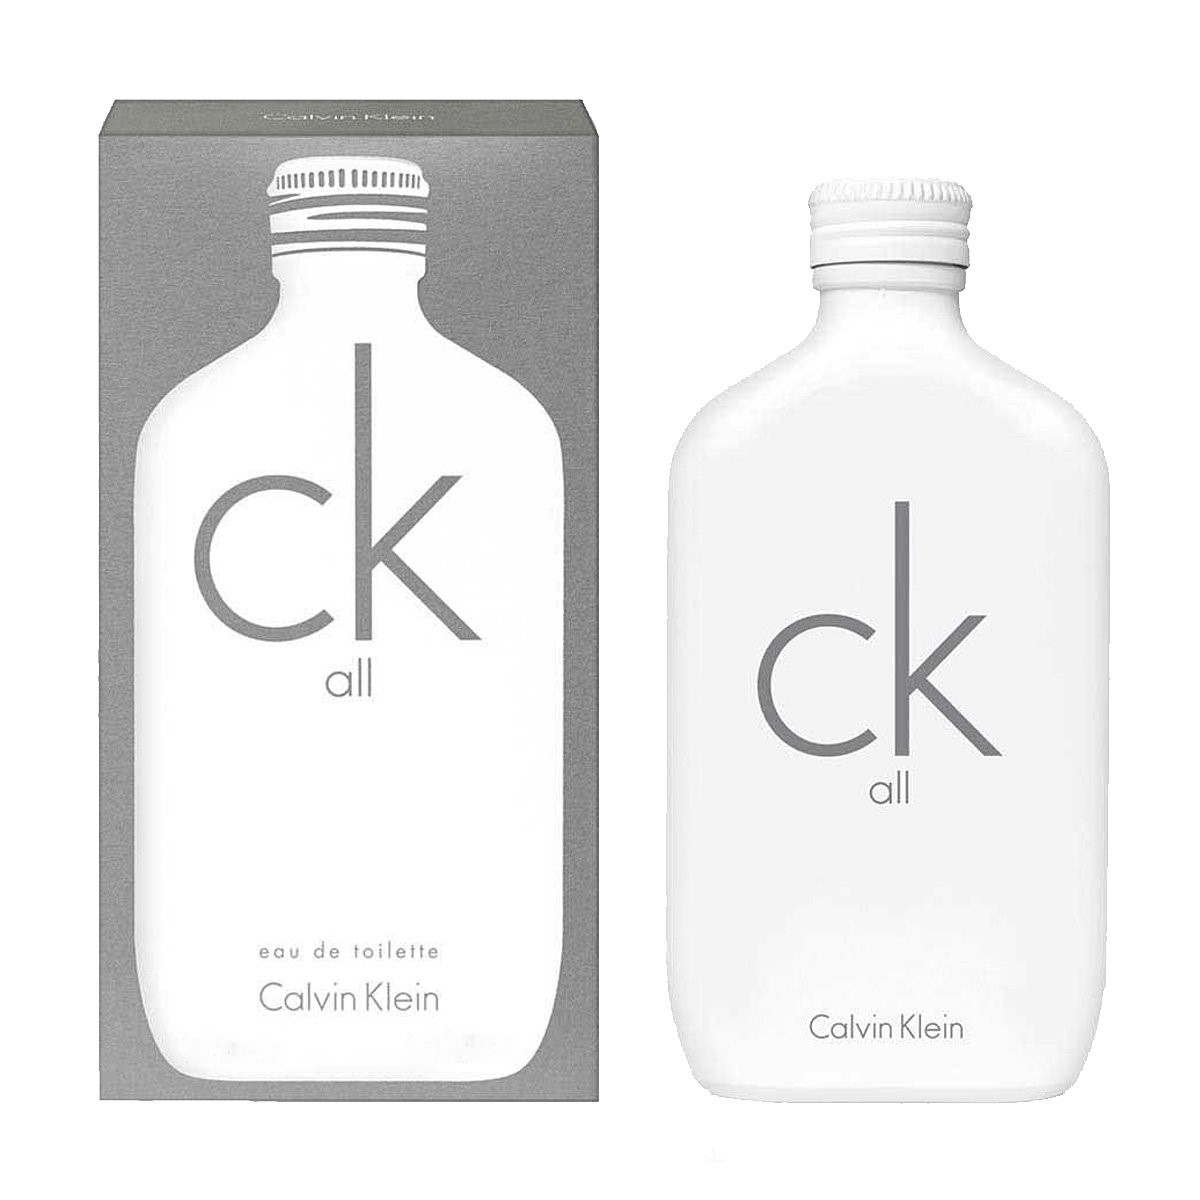 Купить Туалетная вода Calvin Klein, Calvin Klein Ck All 100ml, США